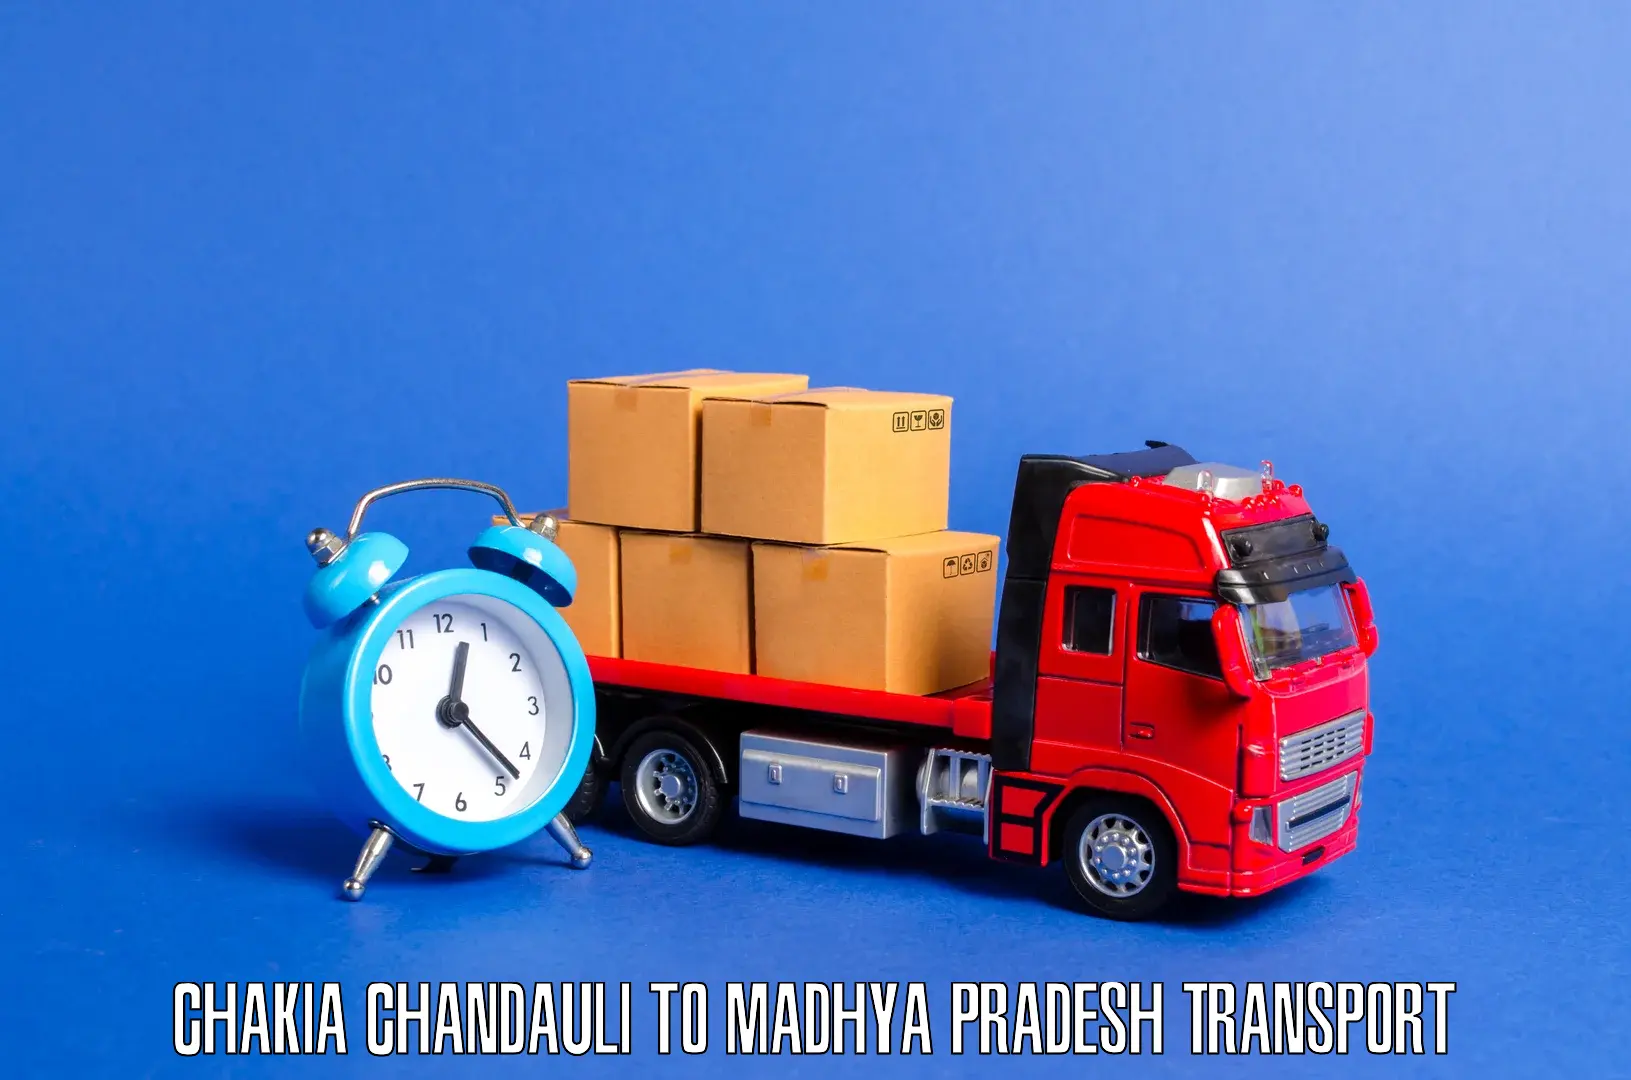 Pick up transport service Chakia Chandauli to Sironj